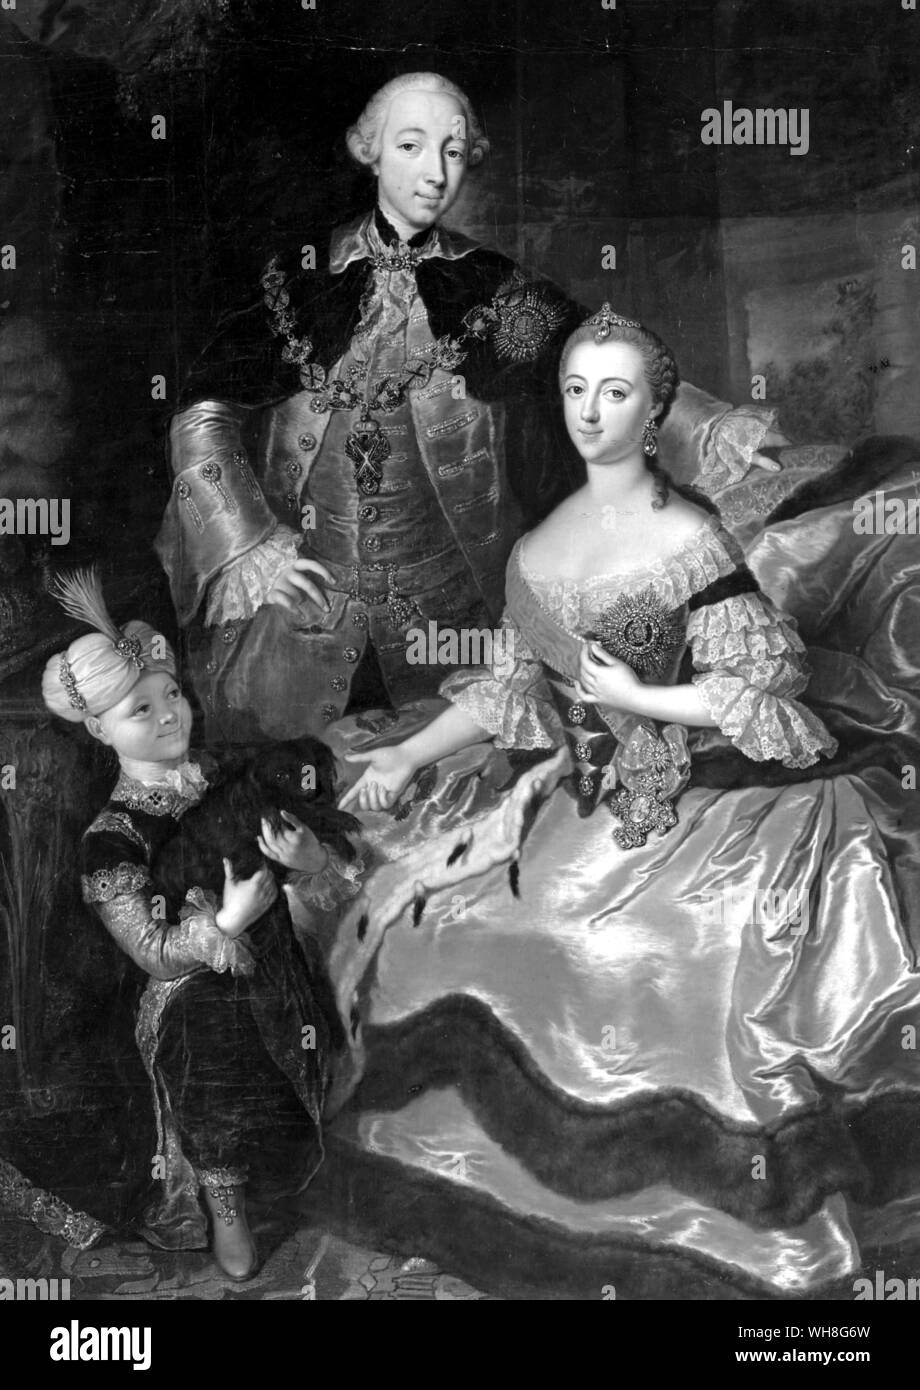 Pietro III come erede al trono, dipinto con la moglie Caterina e Paolo. Il Granduca Pietro Fedorovich (1728-1762), divenne Pietro III, l'imperatore di Russia, nel 1762. Il Romanovs da Virginia Cowles, pagina 82. Foto Stock